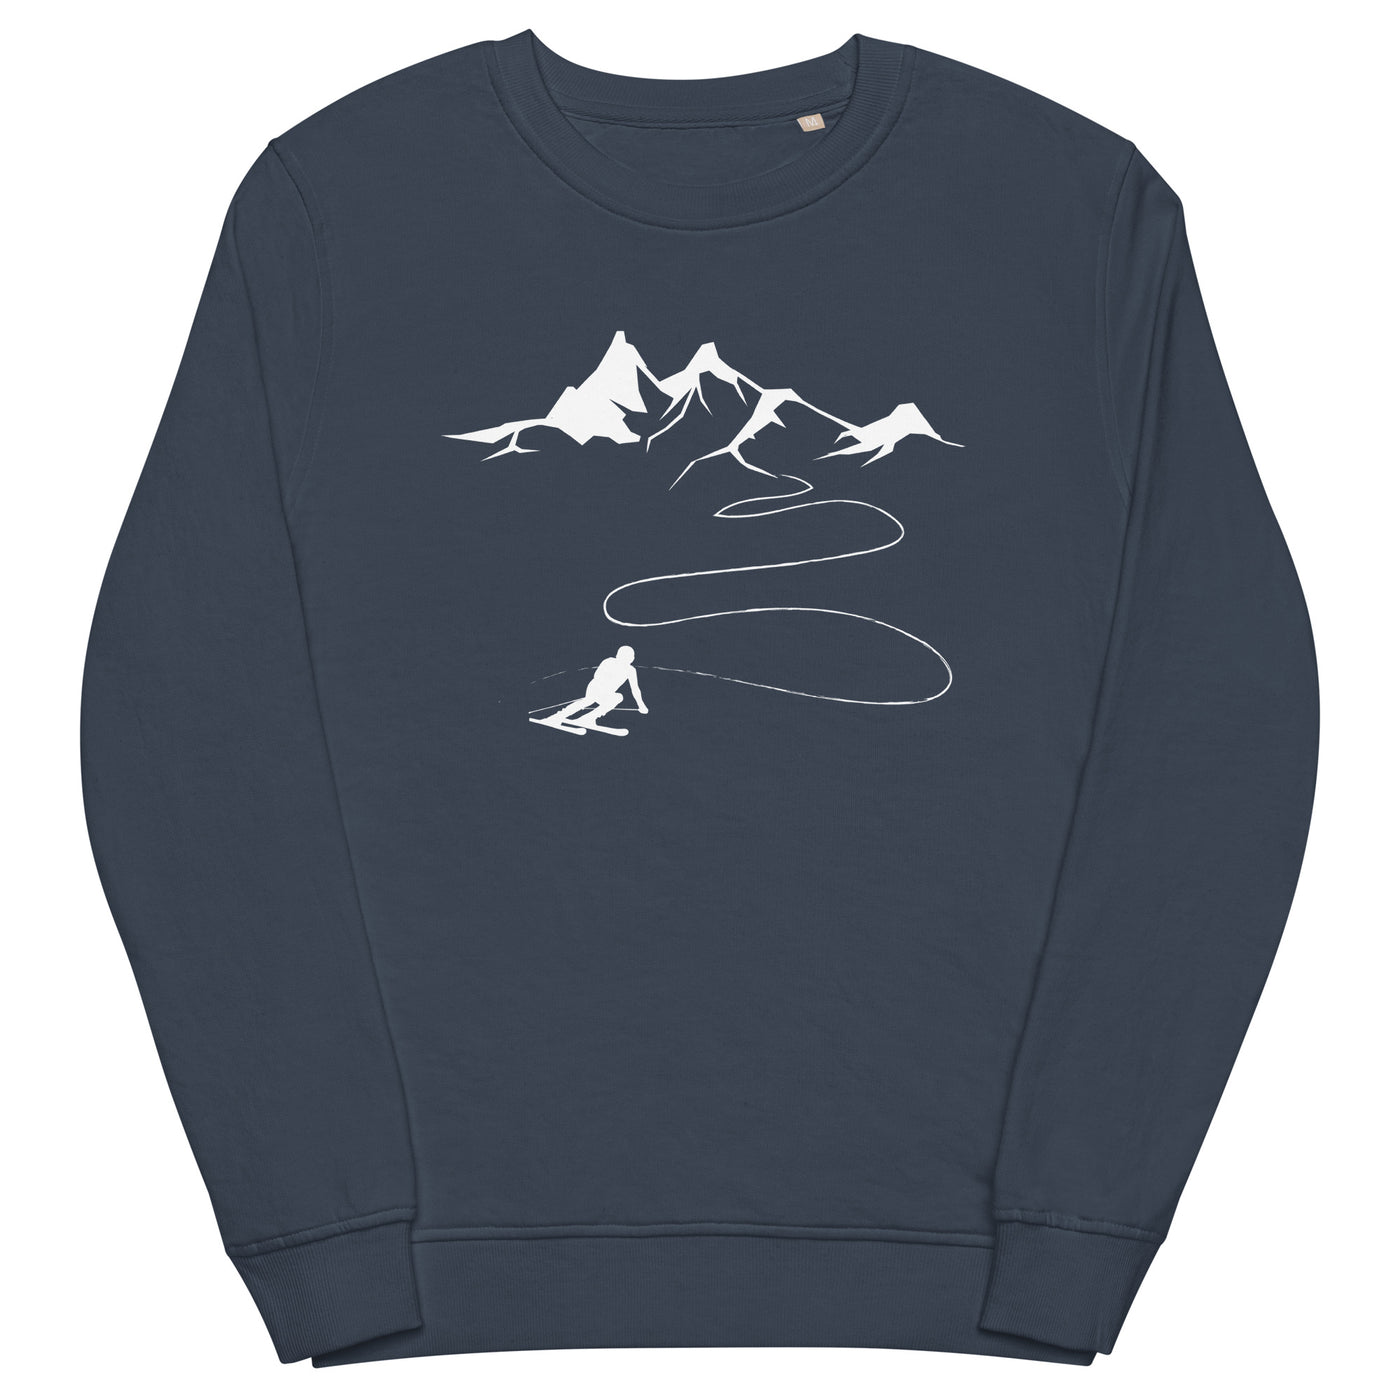 Berge - Skifahren - Unisex Premium Organic Sweatshirt klettern ski xxx yyy zzz French Navy